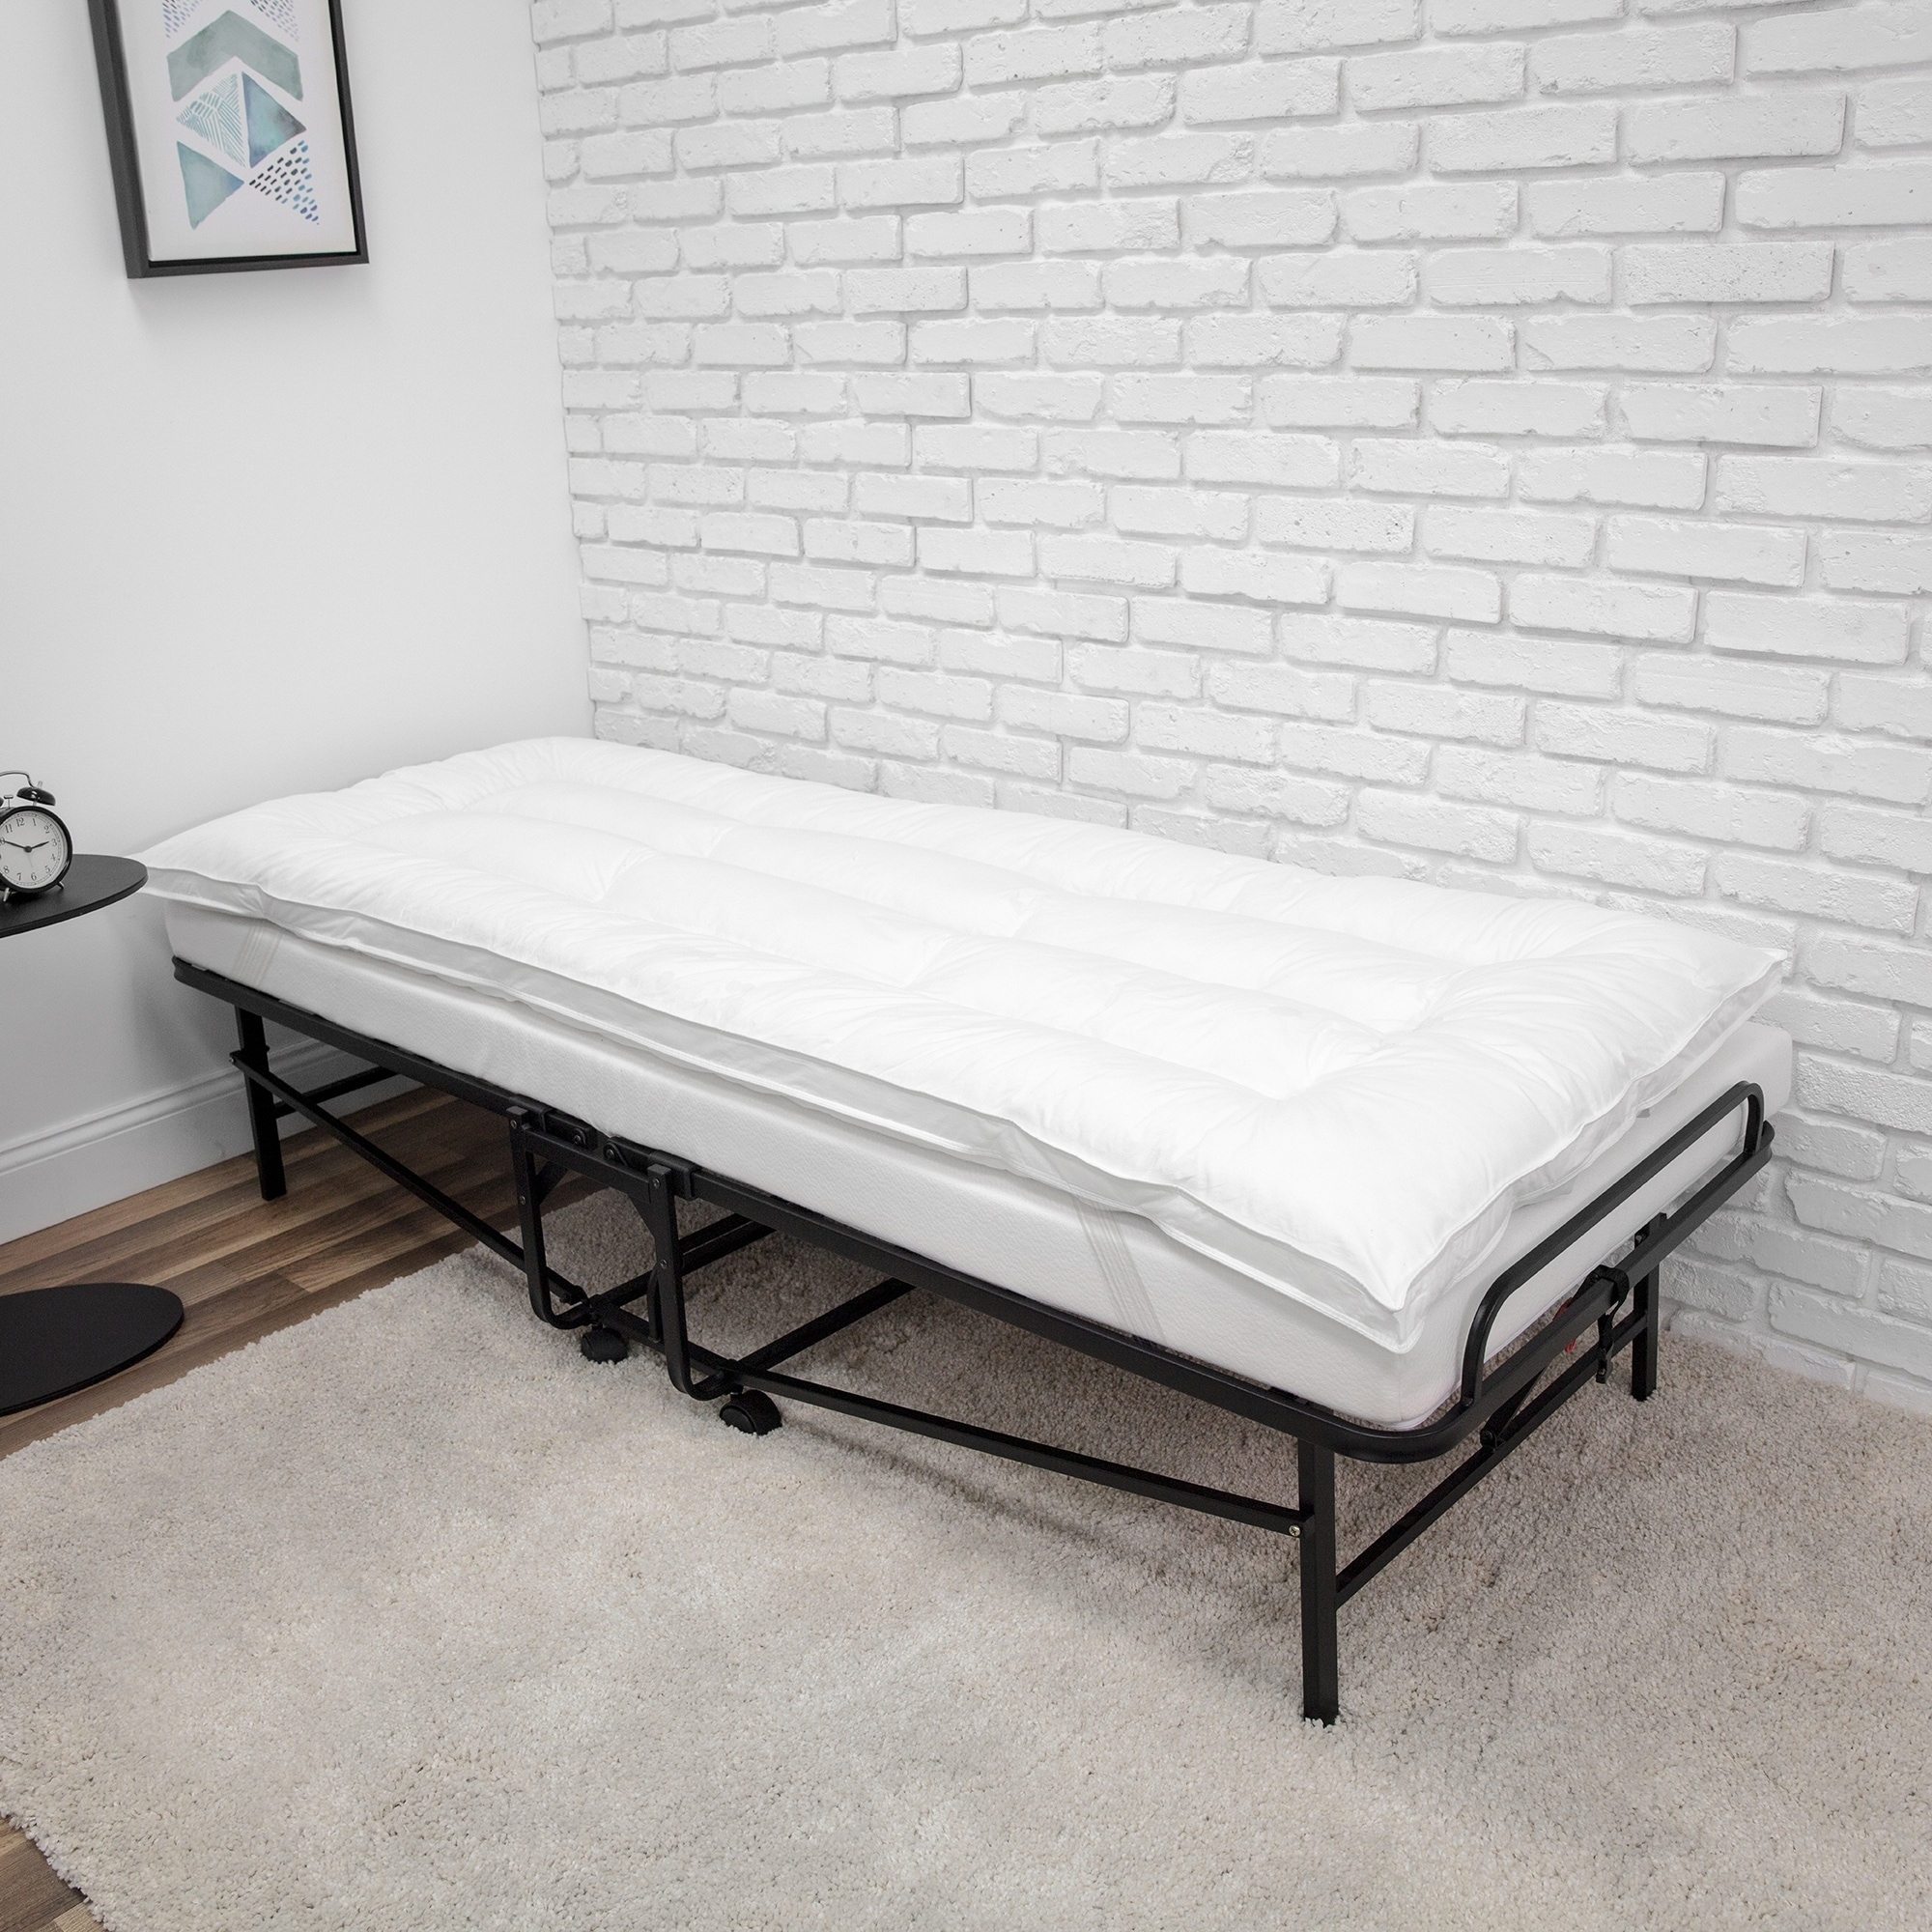 cot bed mattress enhancer